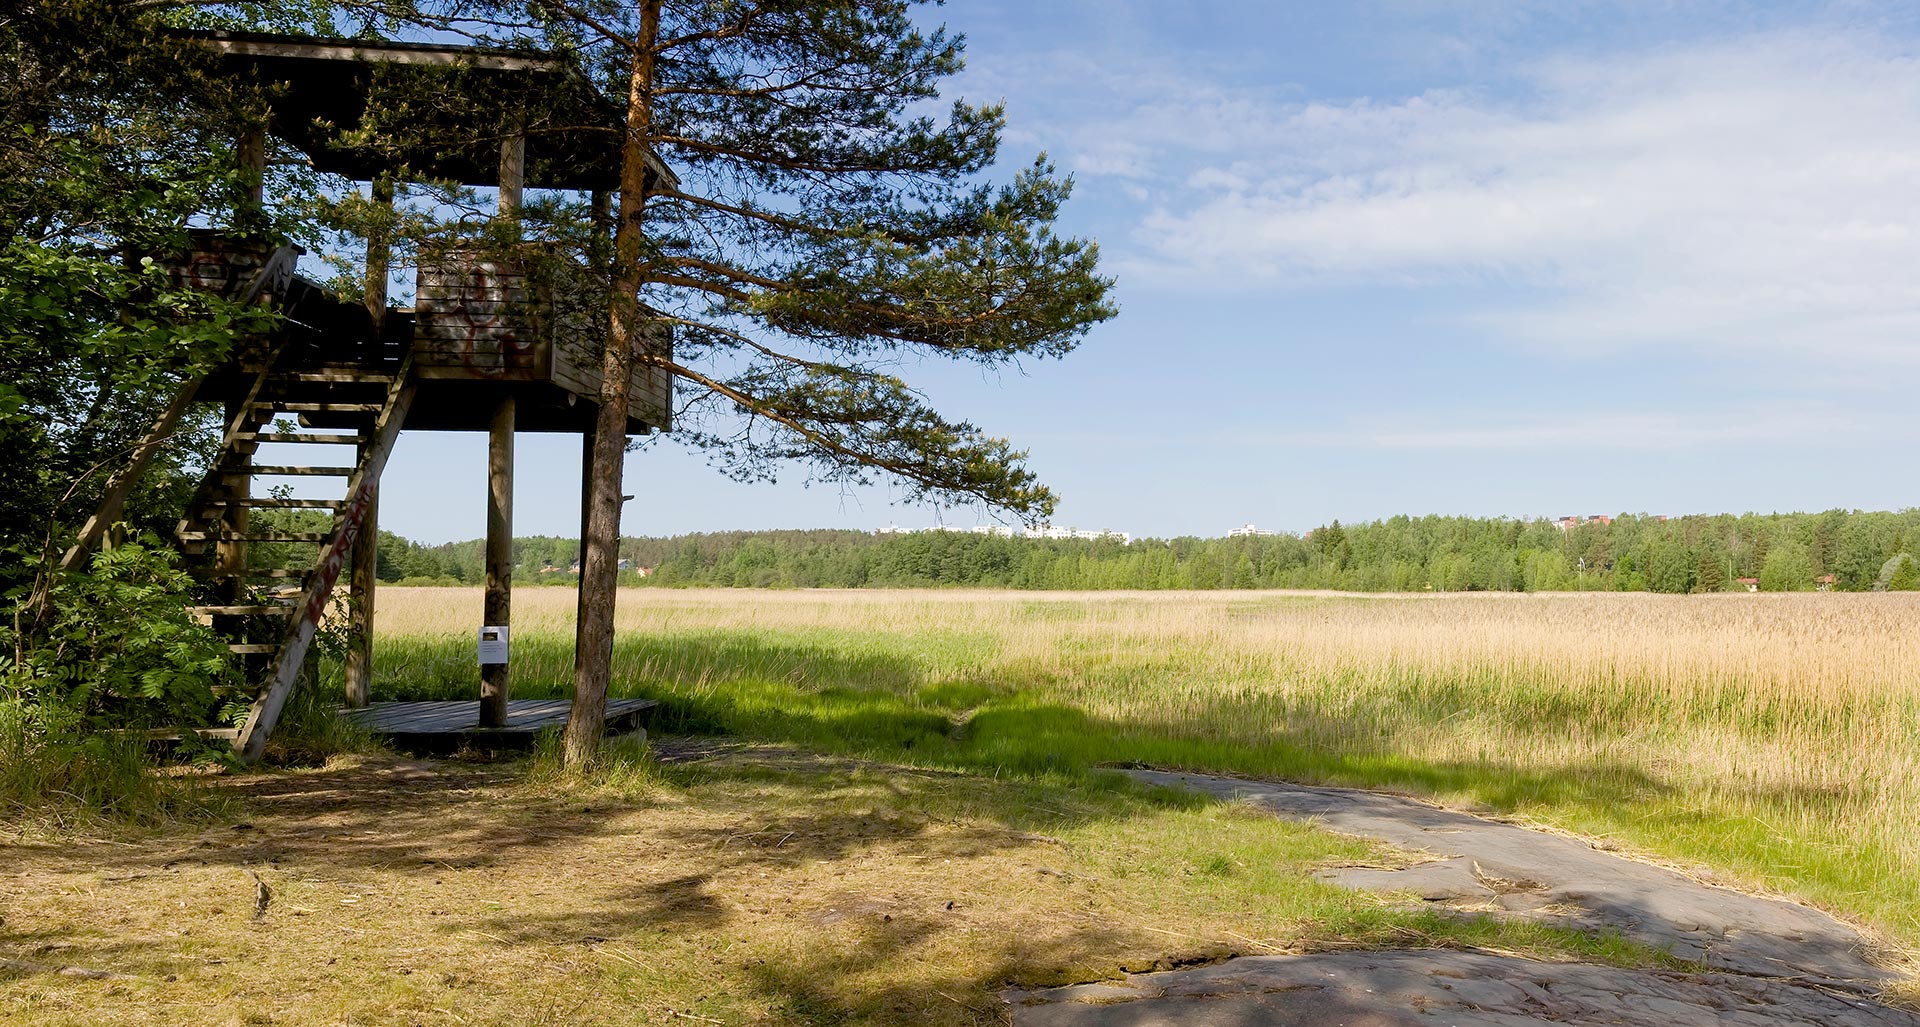 Hanikan luonnonsuojelualue ja lintutorni © Visit Espoo